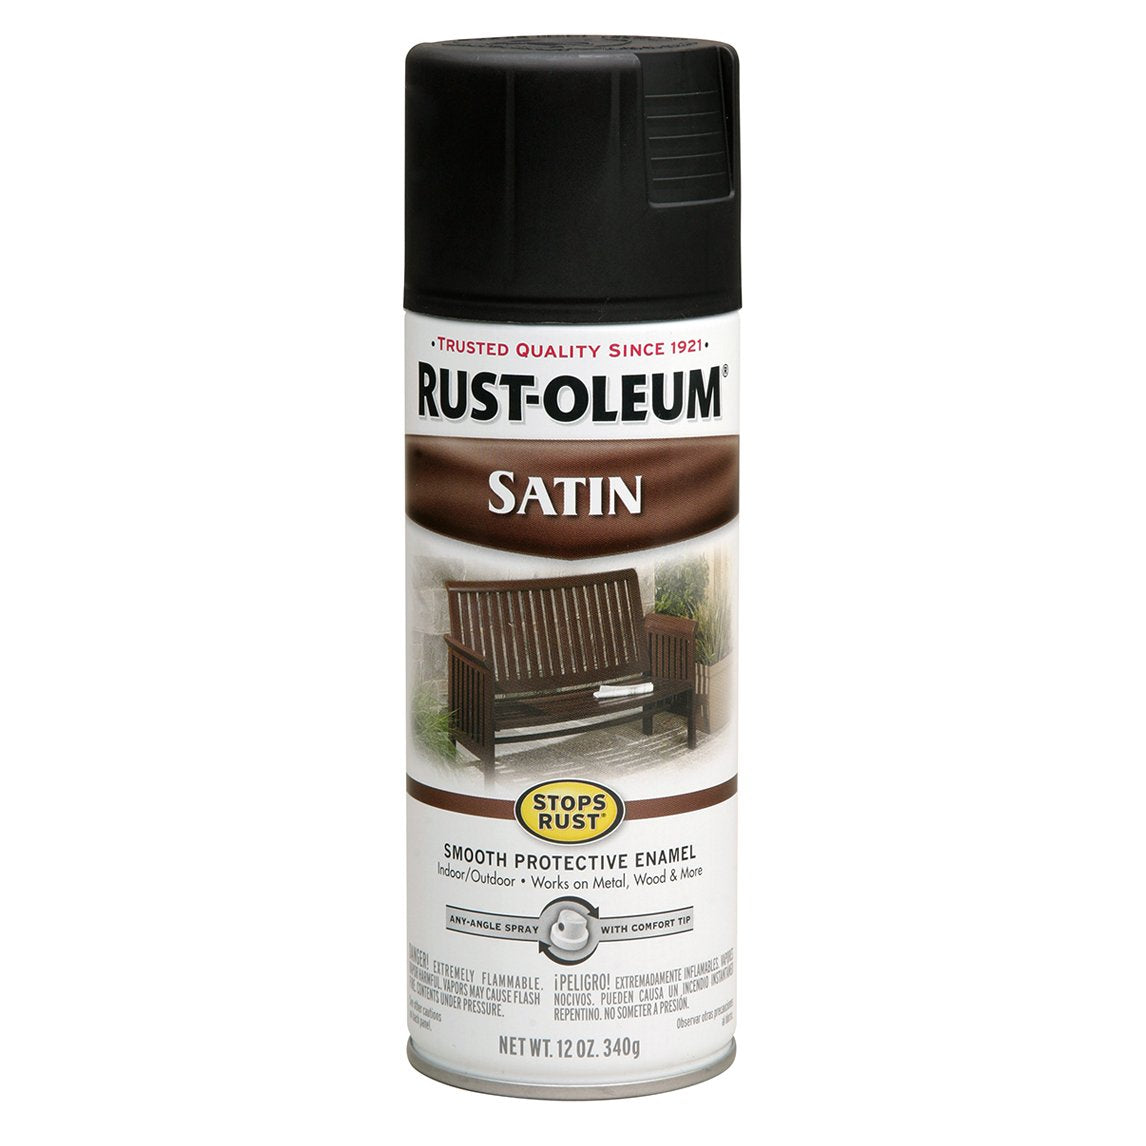 Stops Rust Spray Paint - Satin Finish